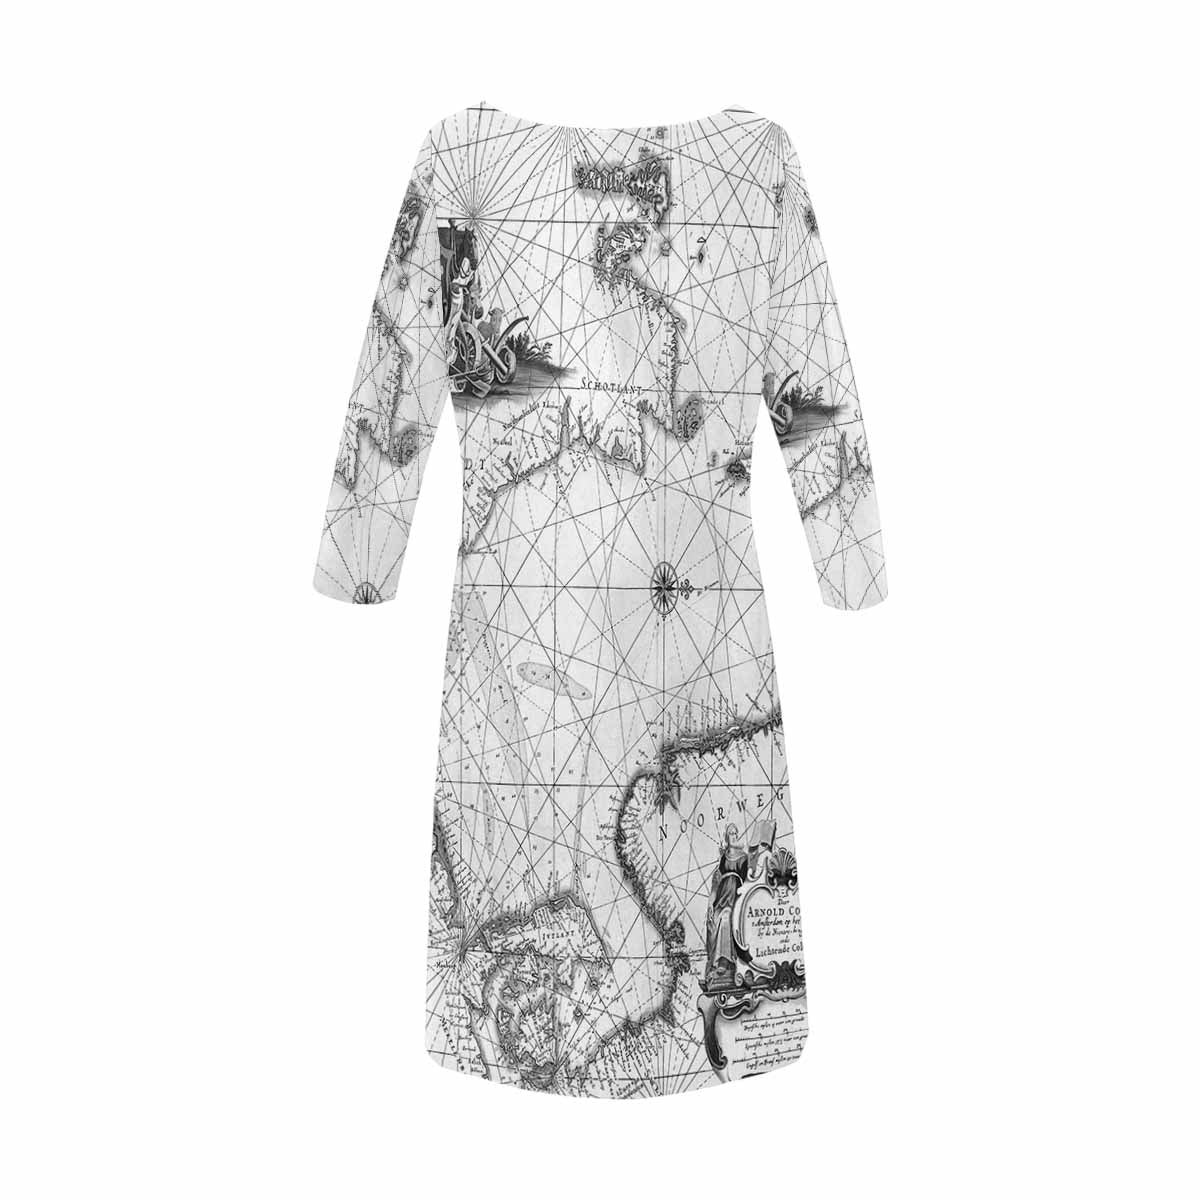 Antique Map loose dress, MODEL 29532, design 45